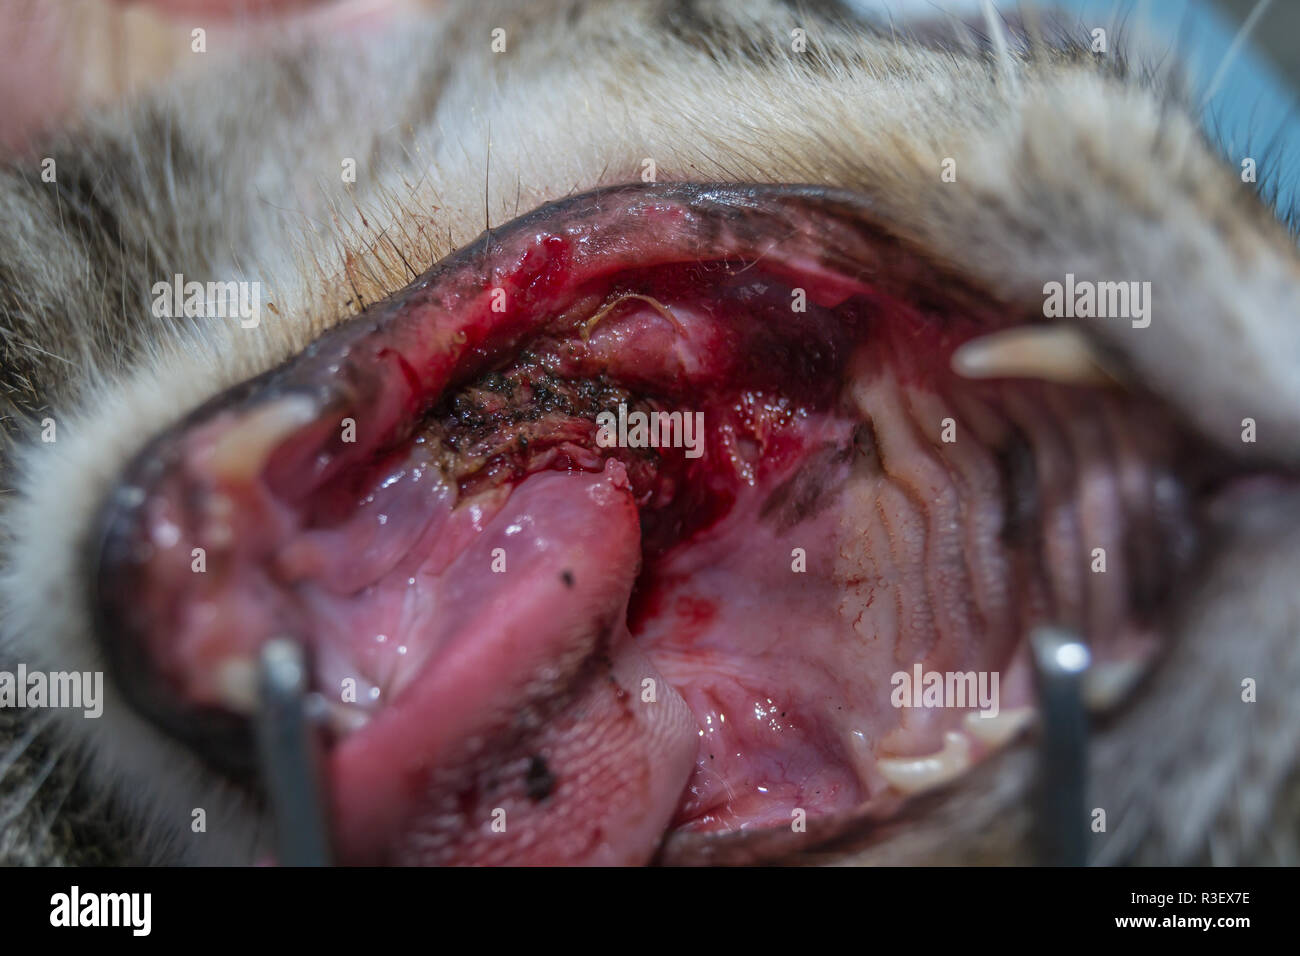 Gatto con la tonsillite, rimozione tonsille con elettrocauterizzazione, chirurgia orale negli animali domestici Foto Stock